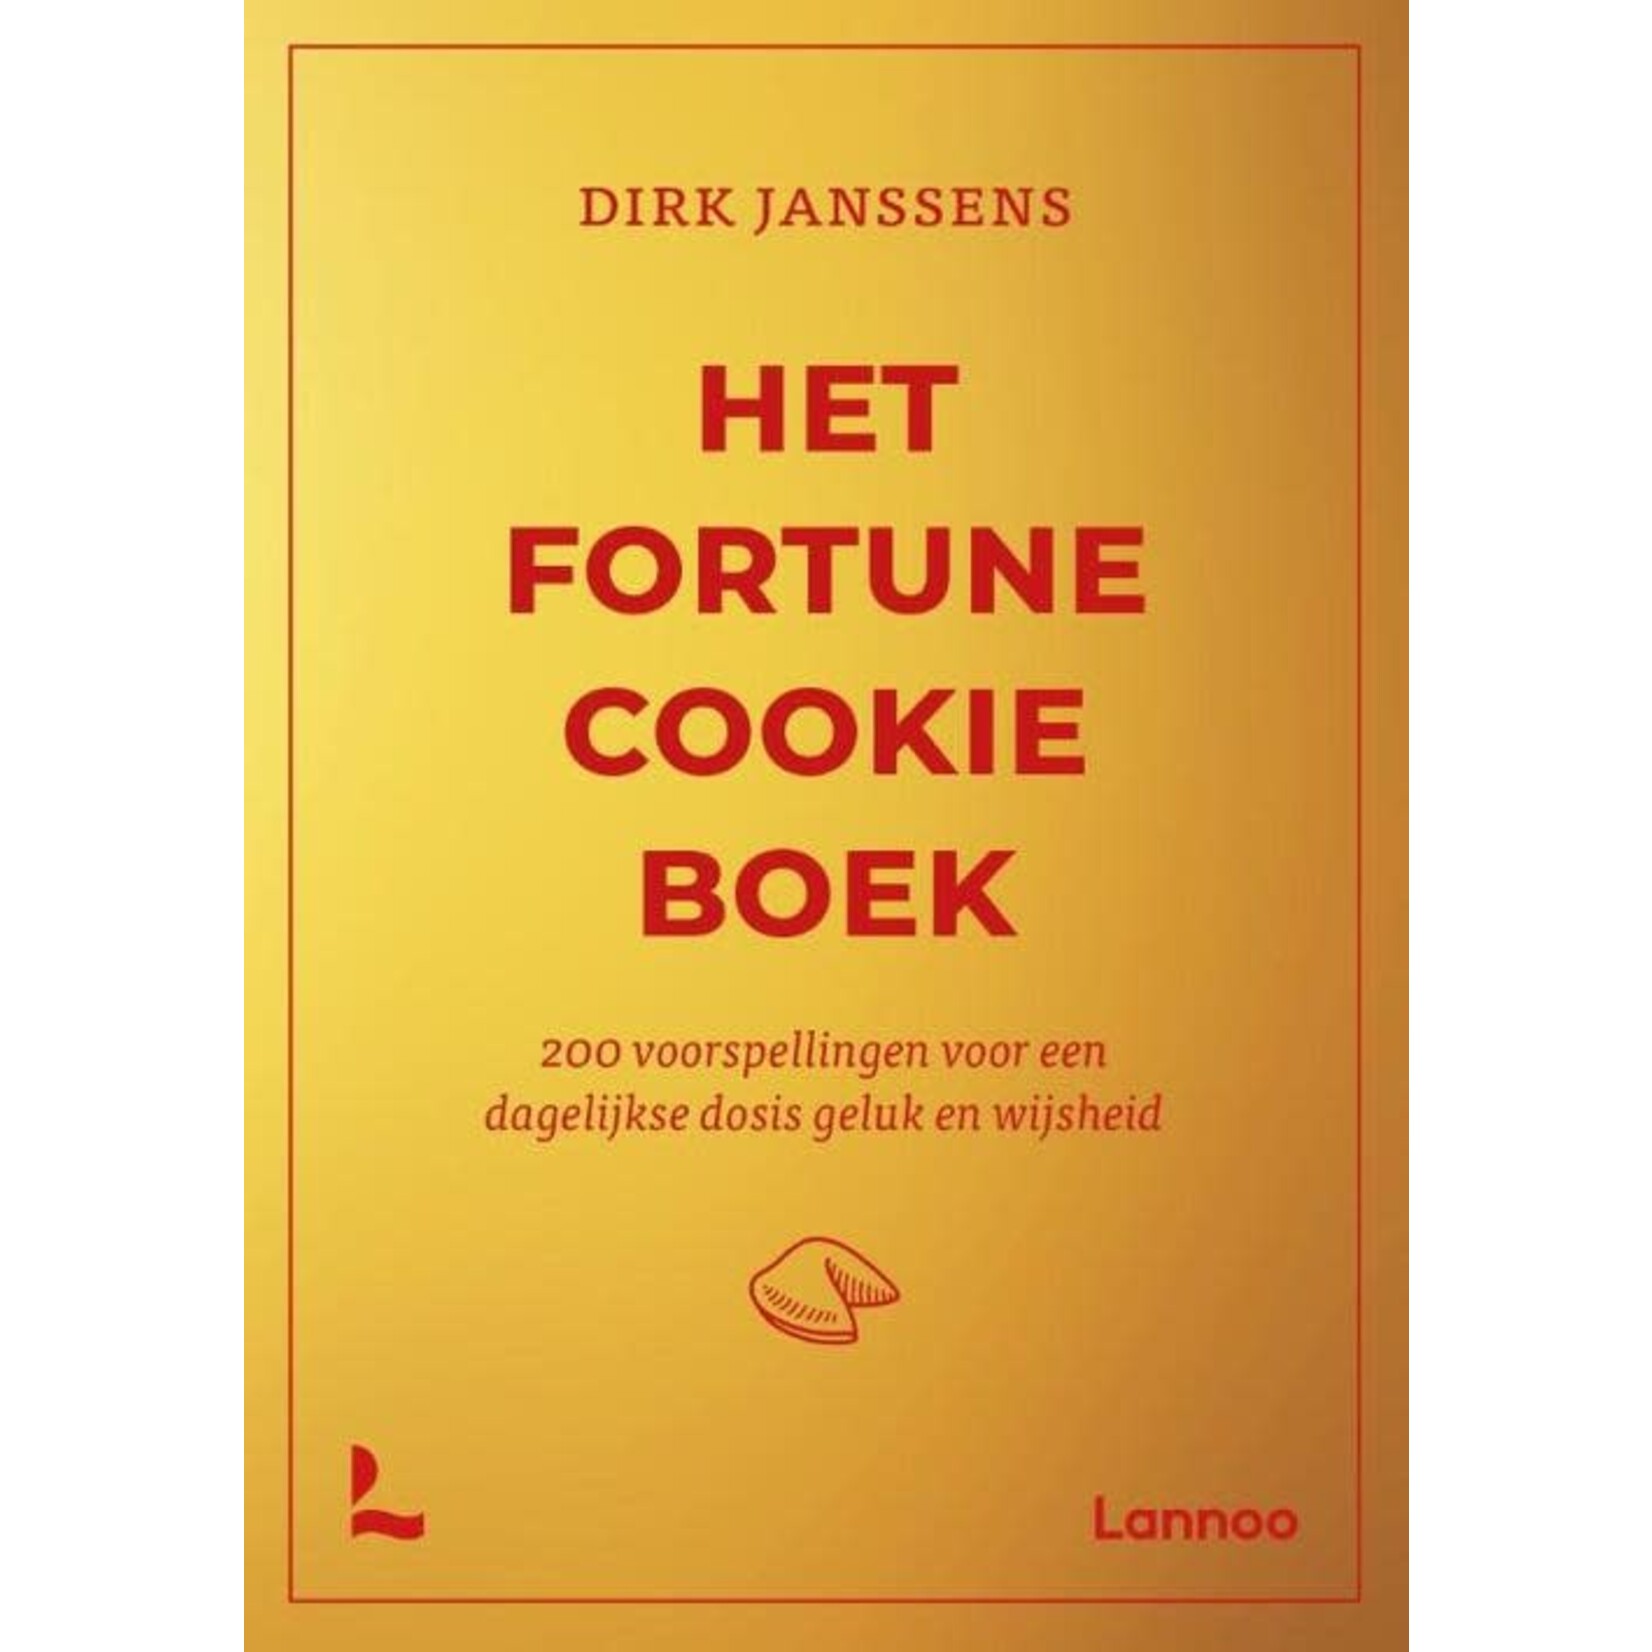 Het Fortune Cookie Boek, 200 voorspellingen voor een dagelijkse dosis geluk en wijsheid